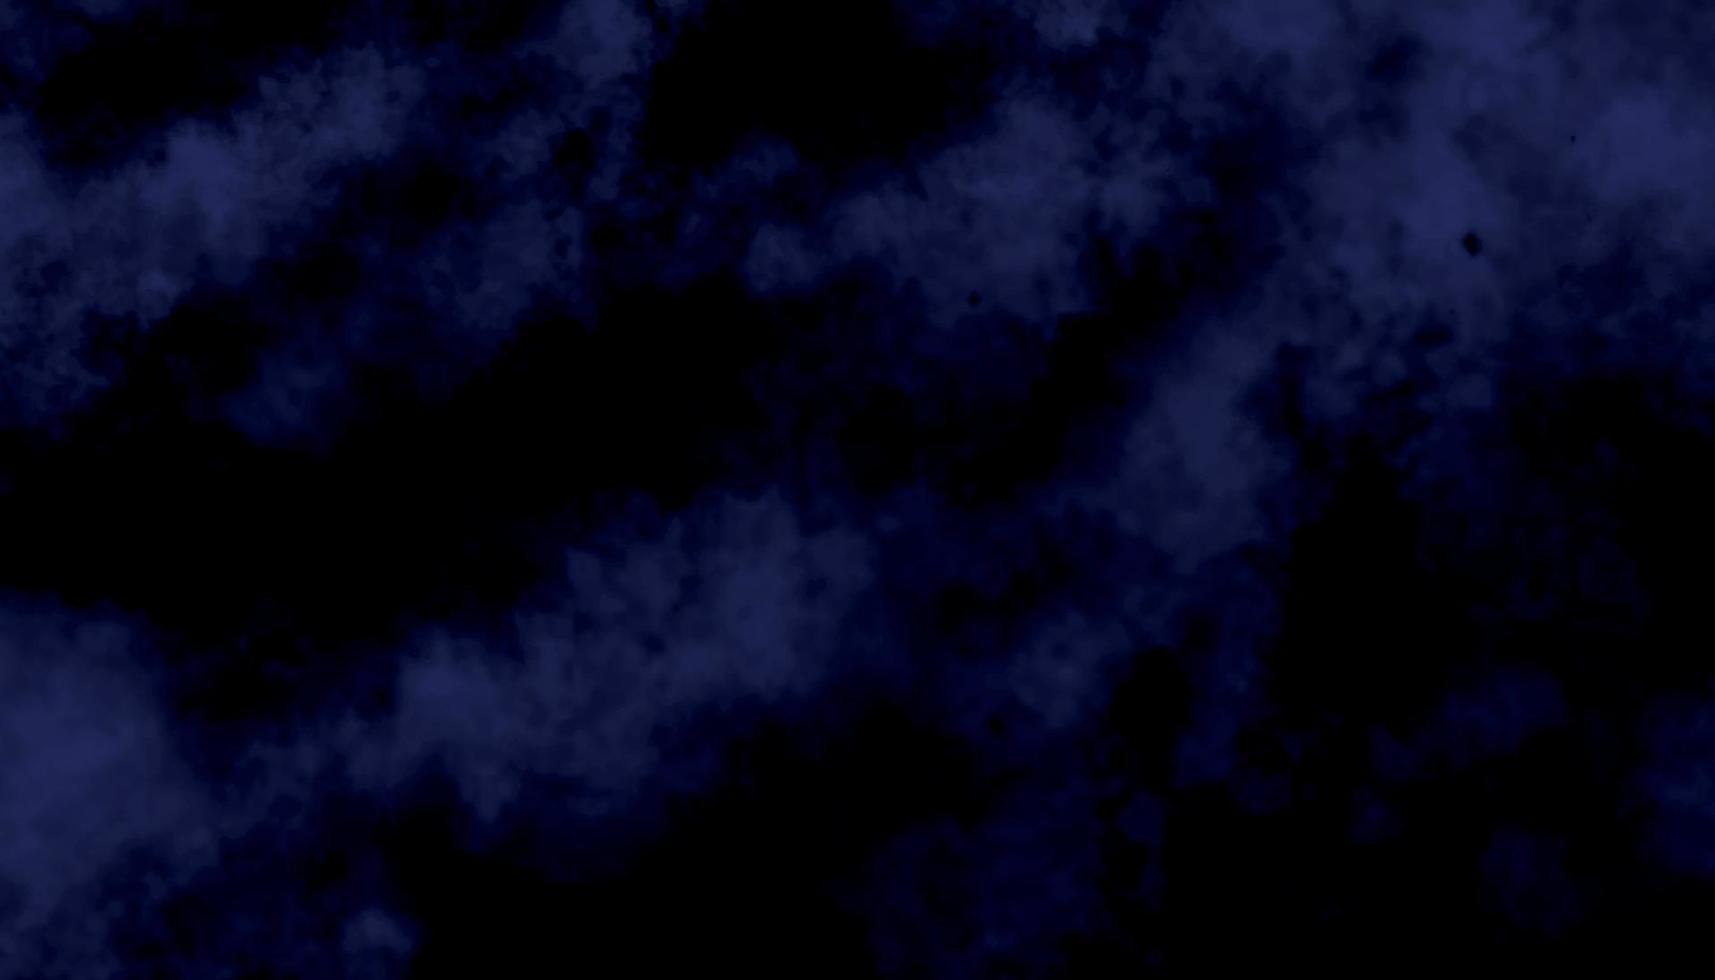 leggero inchiostro tela per moderno creativo grunge design. acquerello su in profondità buio blu carta sfondo. vivido strutturato aquarelle dipinto fulmine notte cielo e tuono tempesta, Fumo struttura vettore